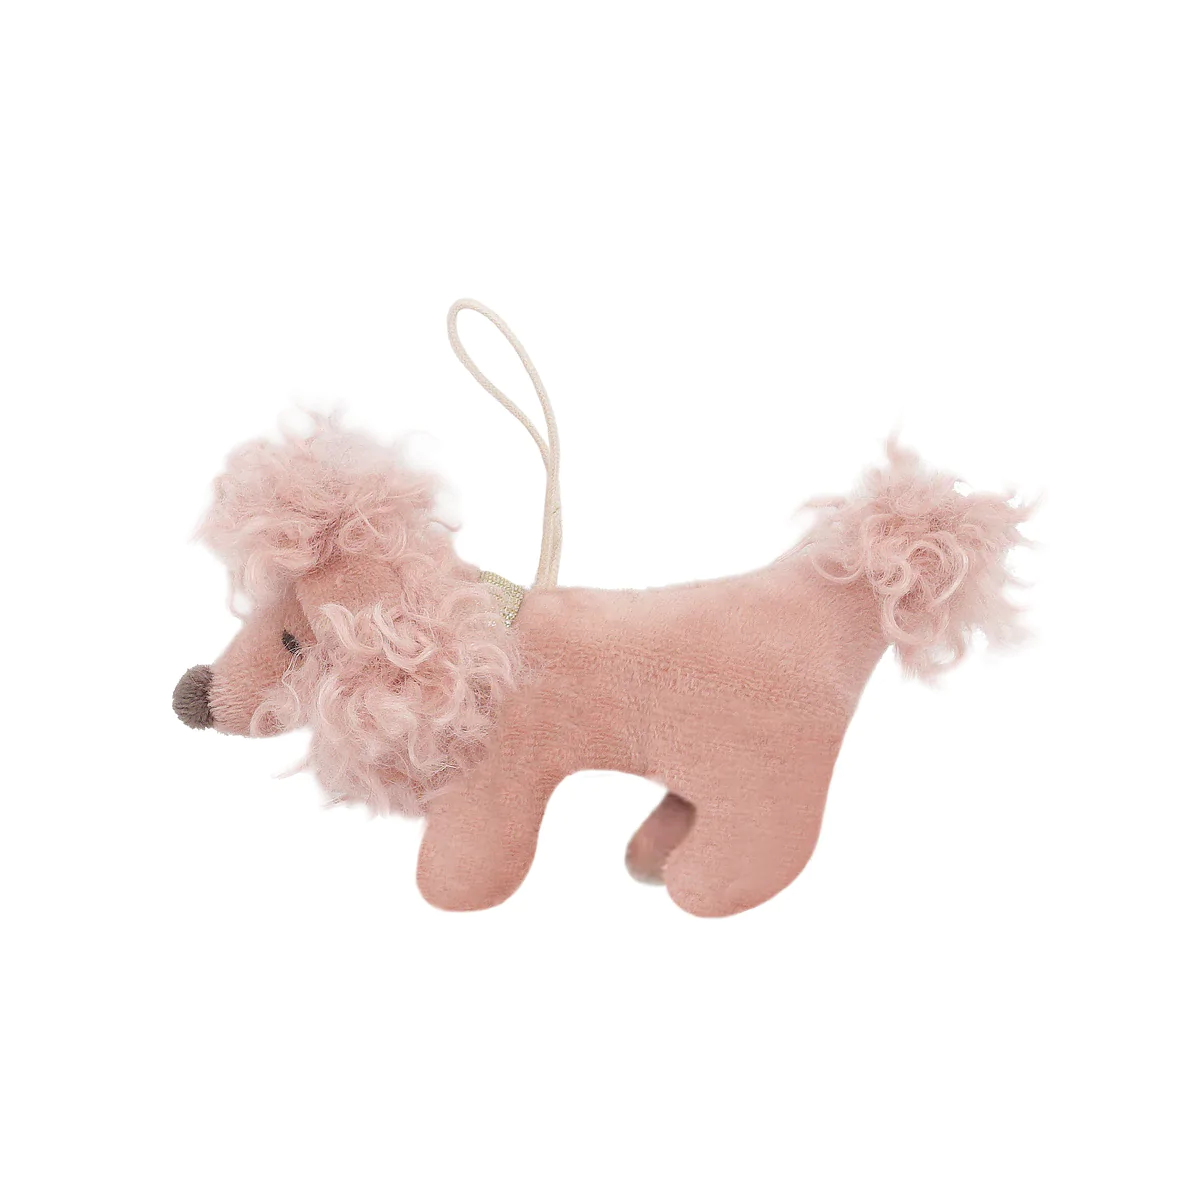 Mon Ami Pink Poodle Ornament